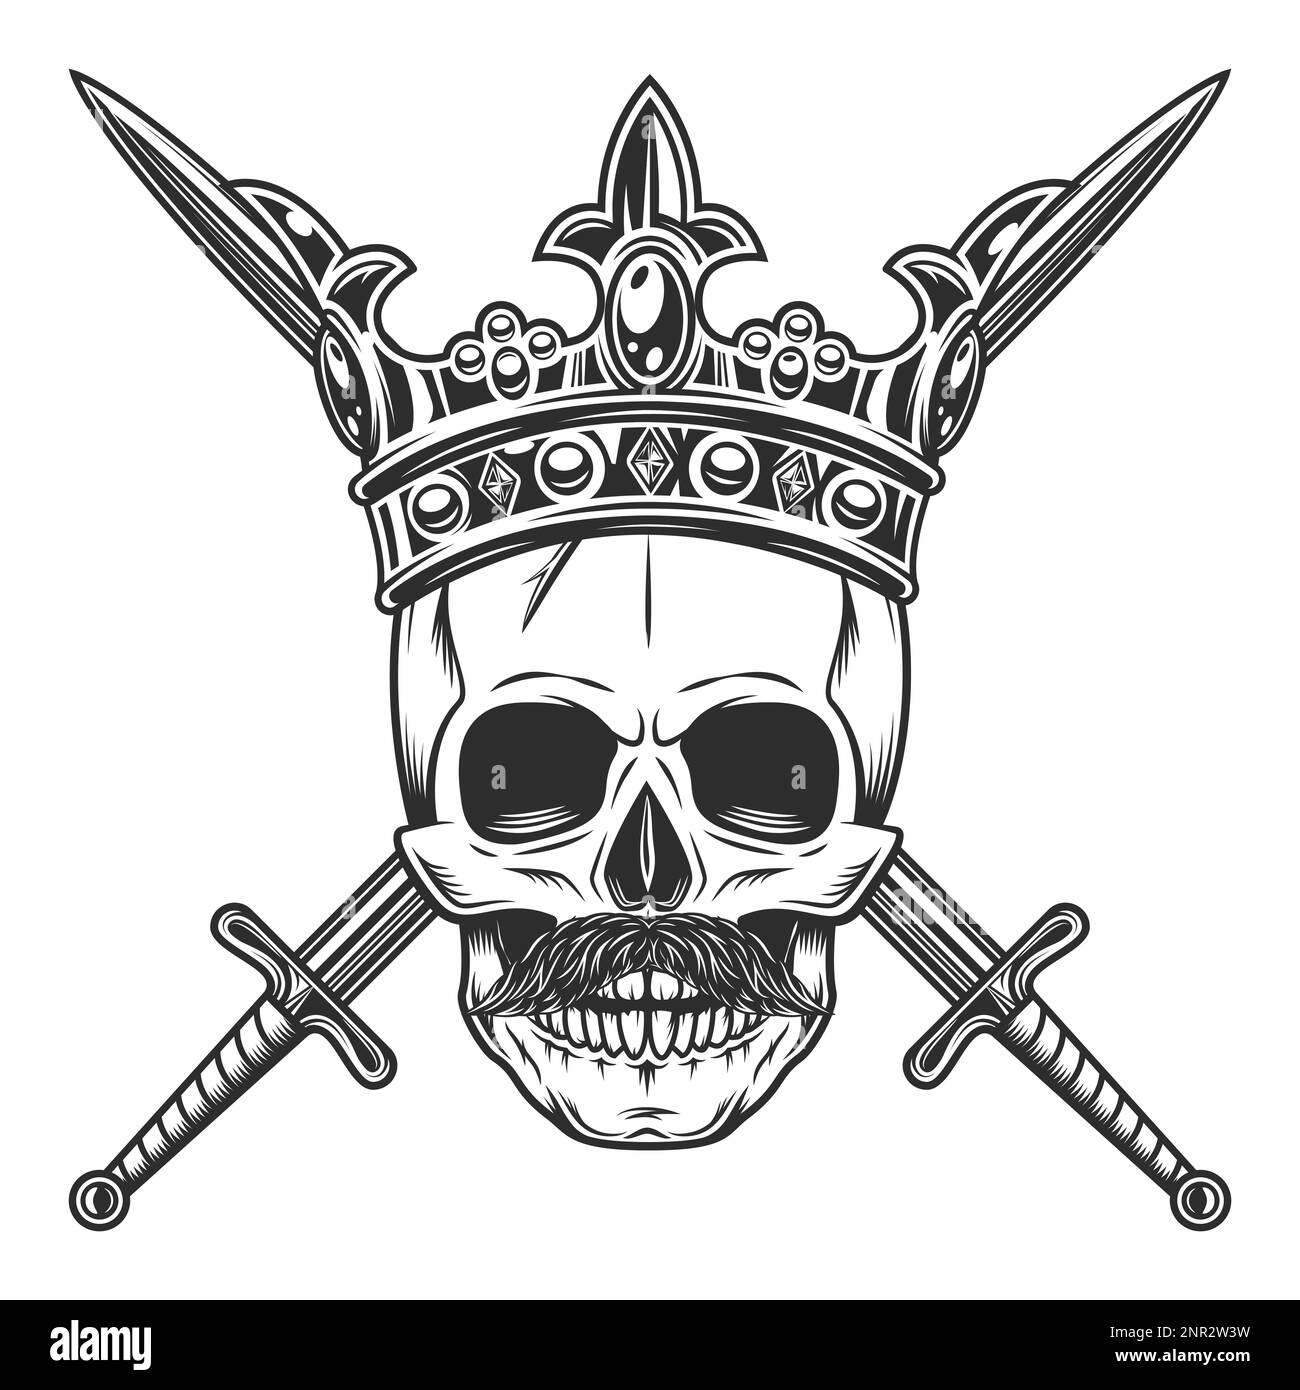 Crâne de la couronne royale avec moustache et épée croisée isolé sur fond blanc illustration monochrome Illustration de Vecteur